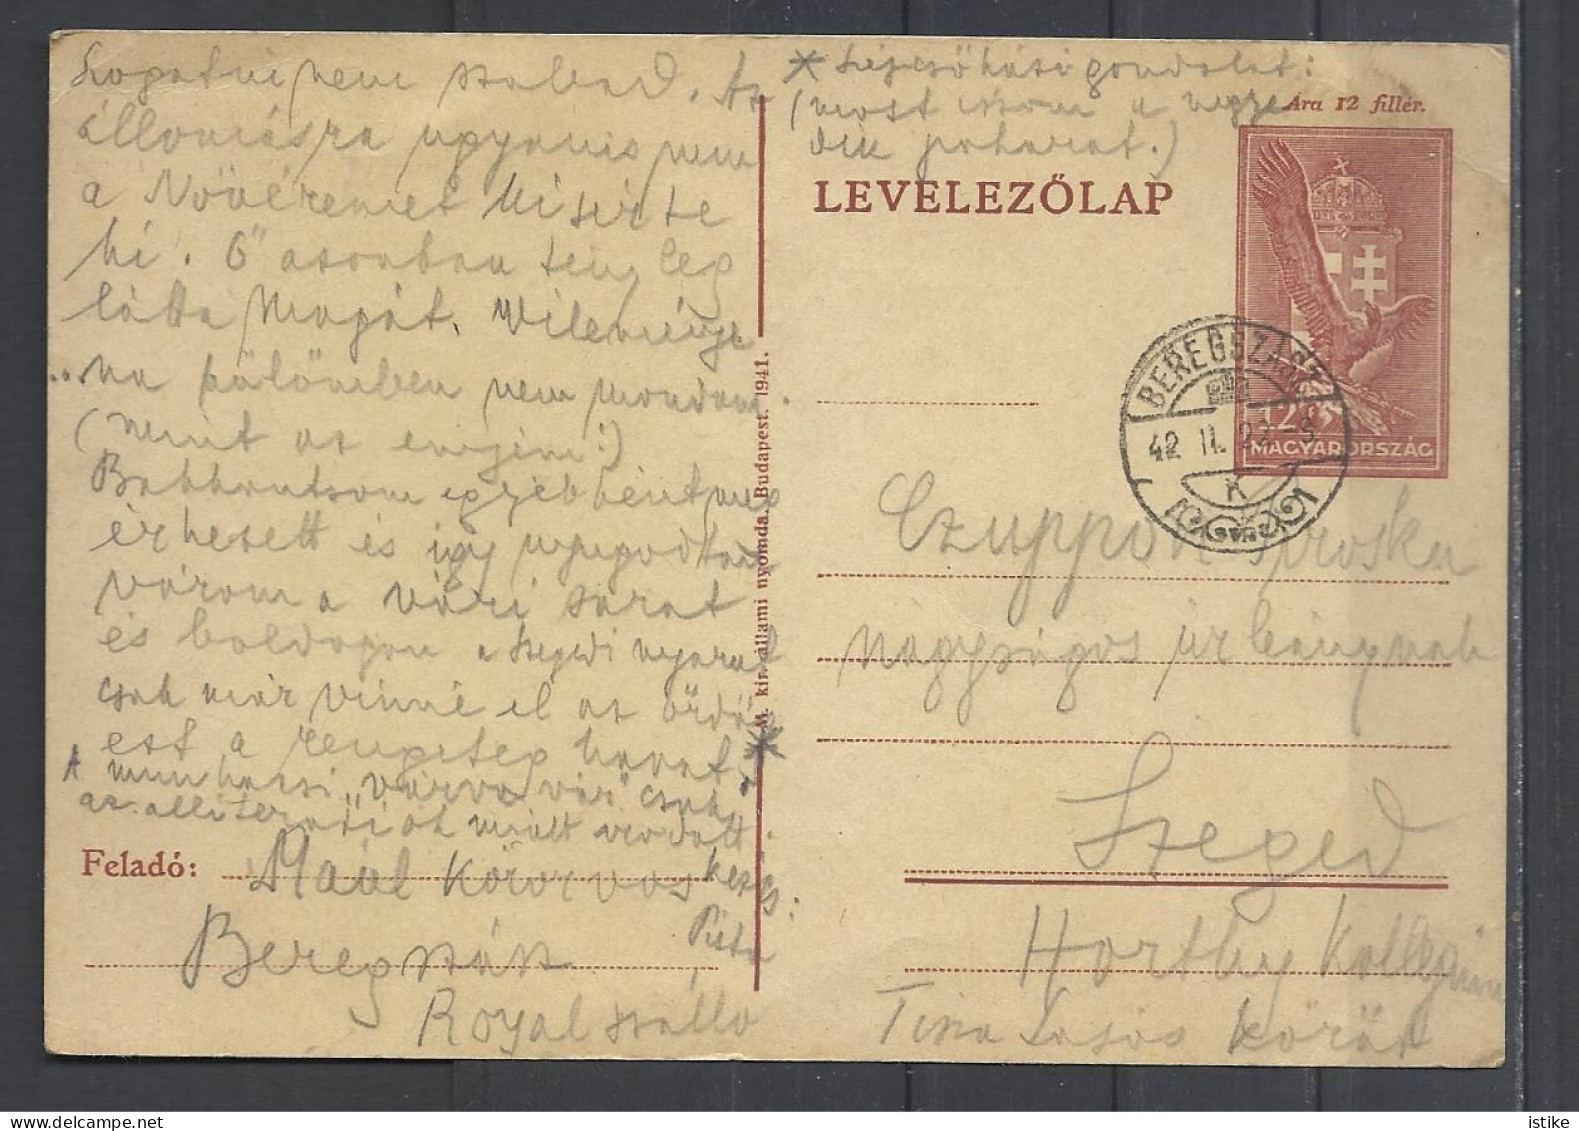 Hungary, St. Card, 12 Fiilér,Beregszász (Berehovo), 1942. - Postal Stationery